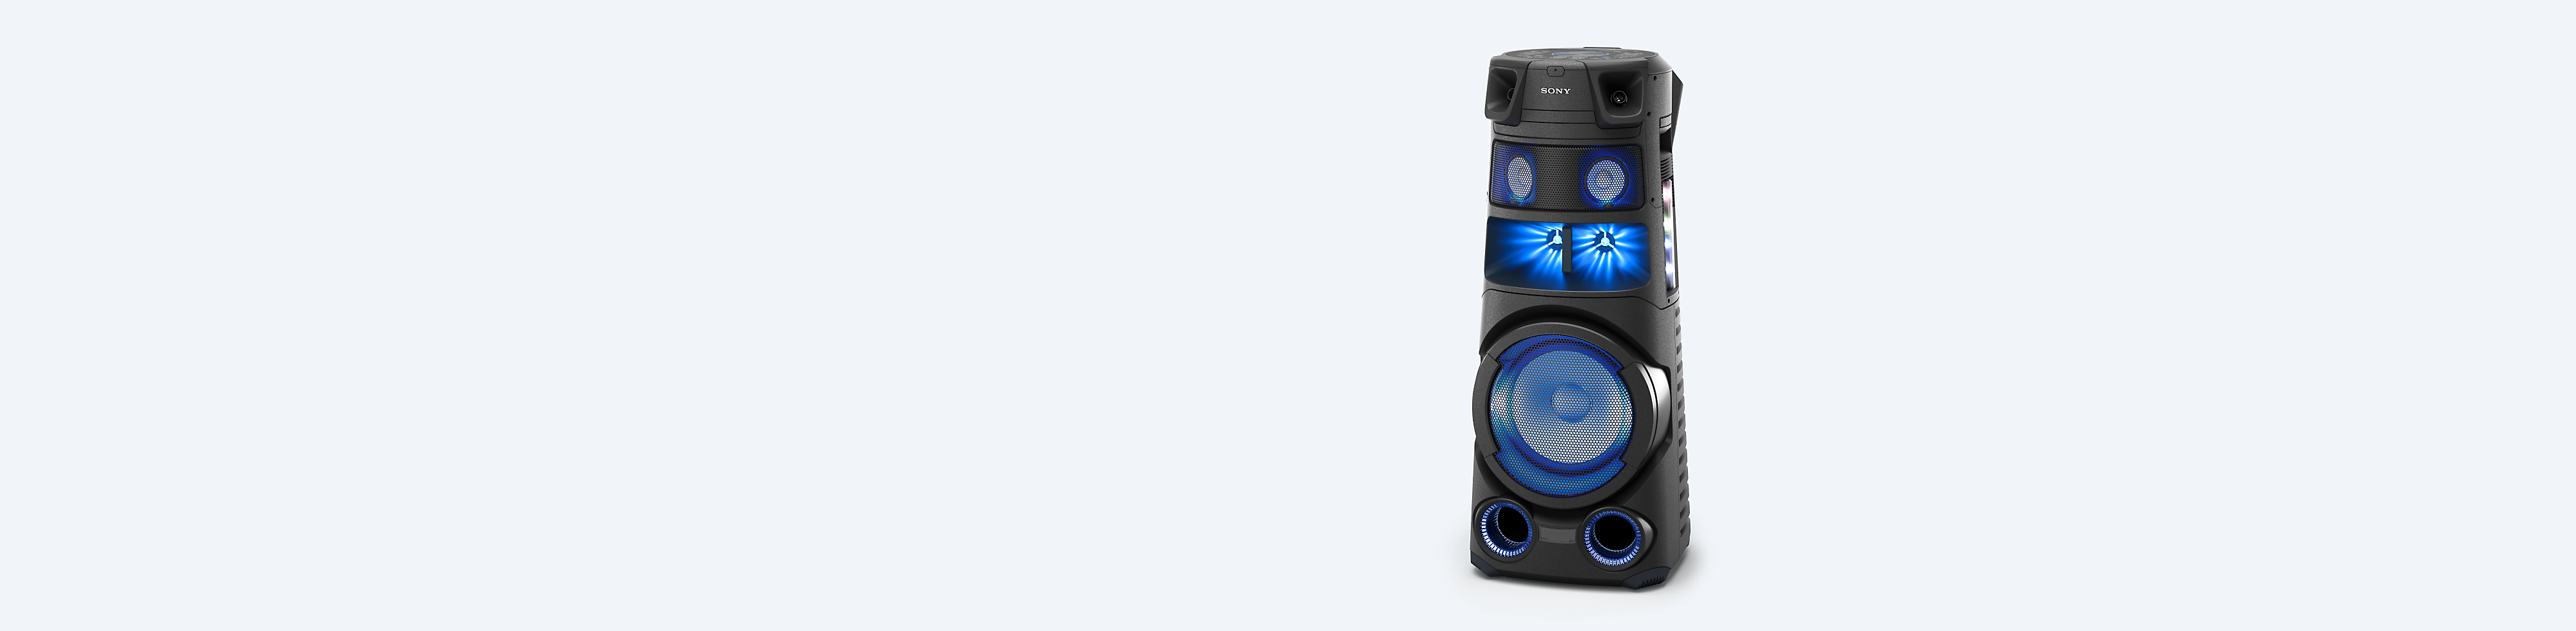 Krachtig audiosysteem van Sony op blauwe achtergrond